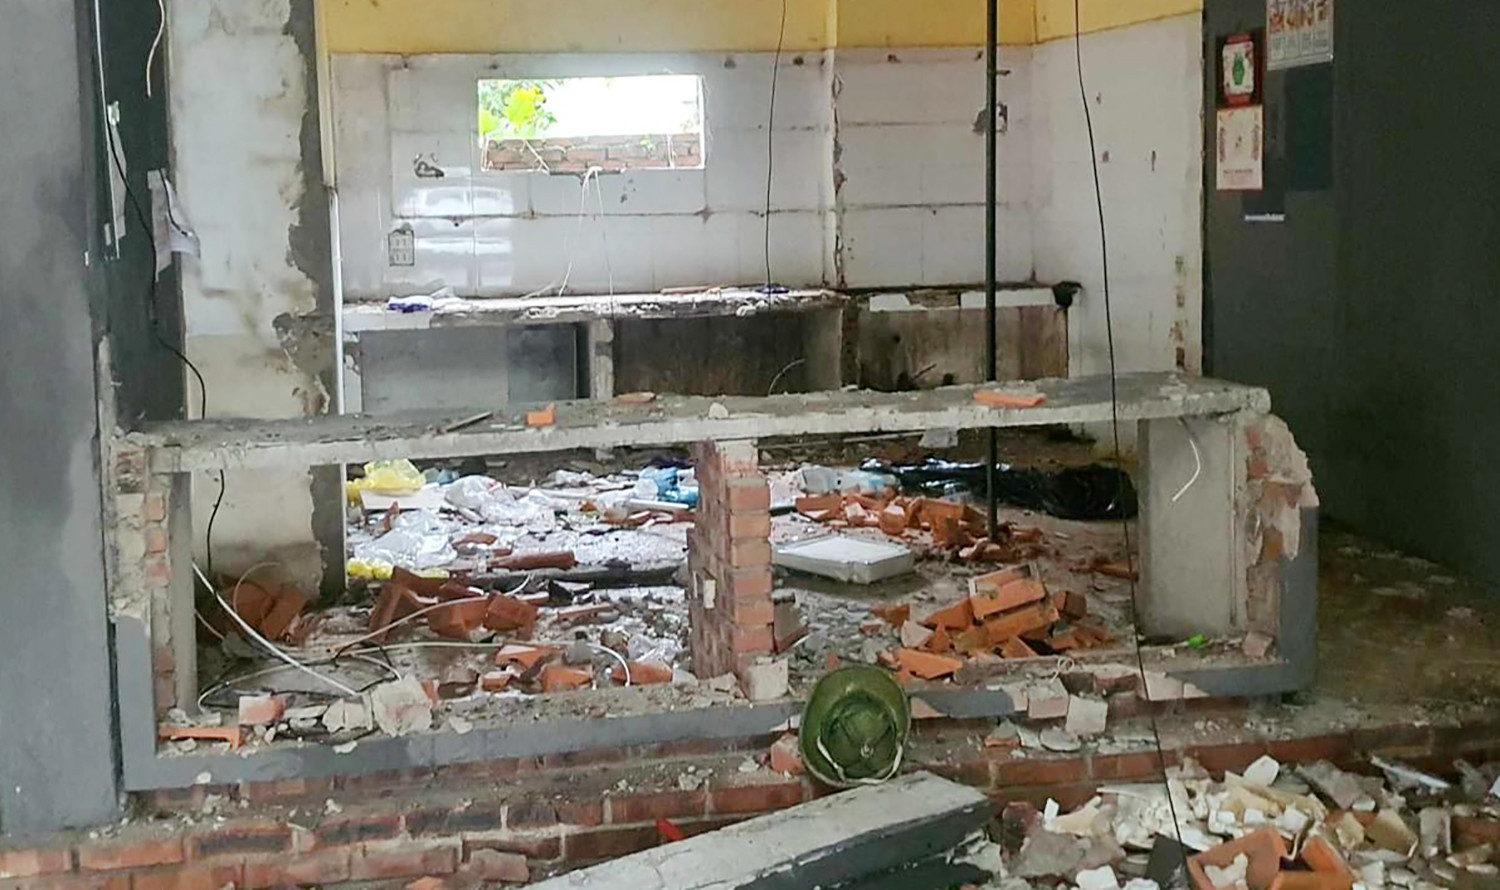 Tiệm cà phê ở Nghệ An bị phá tan hoang bên trong khi kết thúc hợp đồng cho thuê - Ảnh 3.